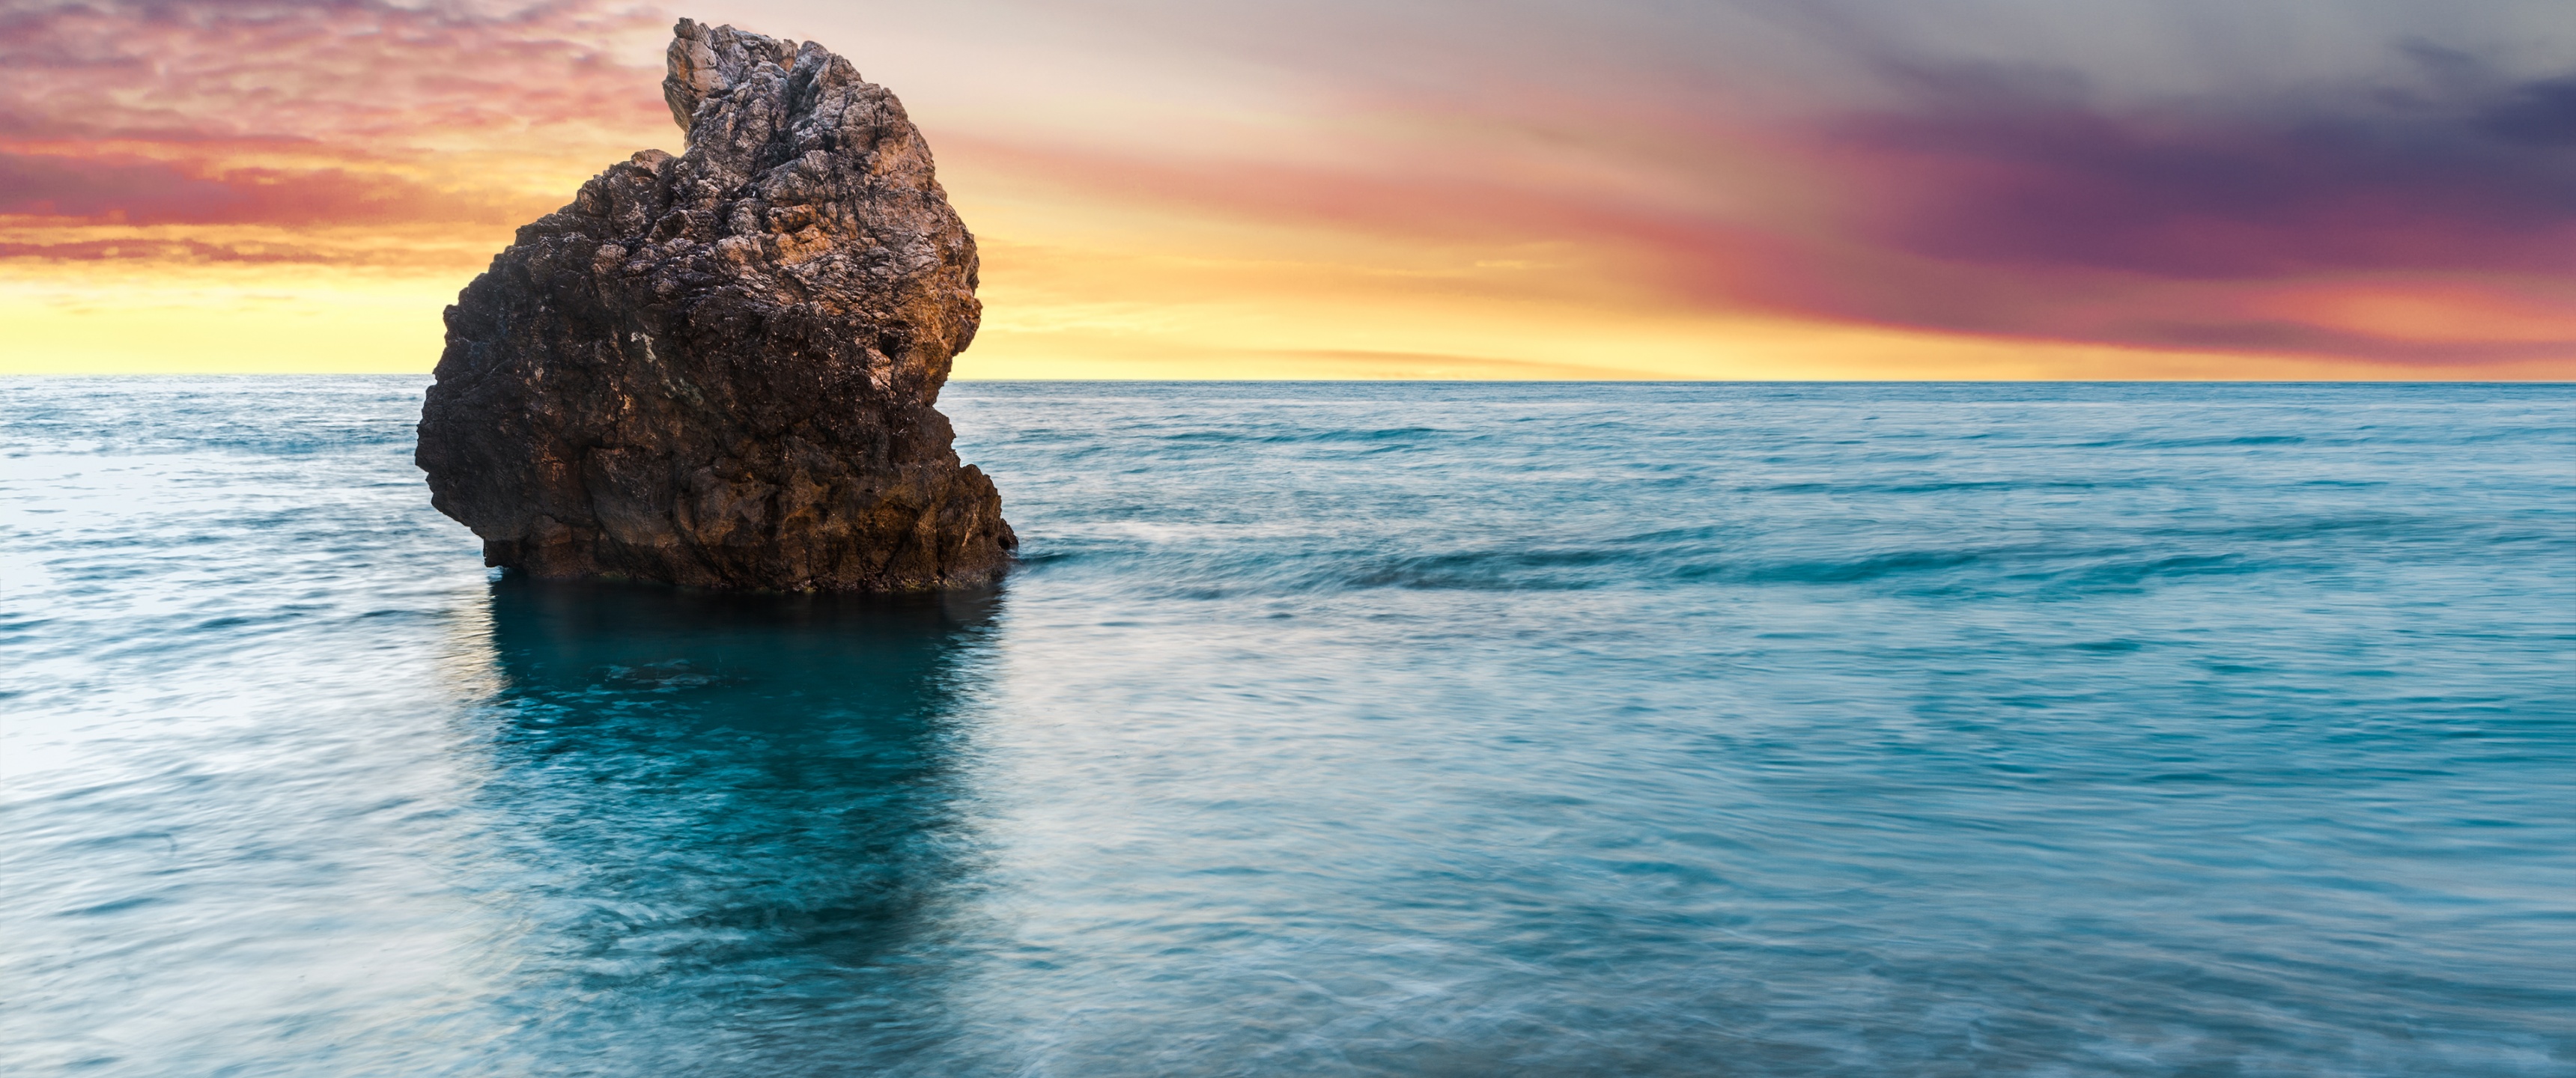 Lefkada Island Wallpaper 4K, Greece, Milos Beach, Sunset, Seascape, Lone rock, Nature